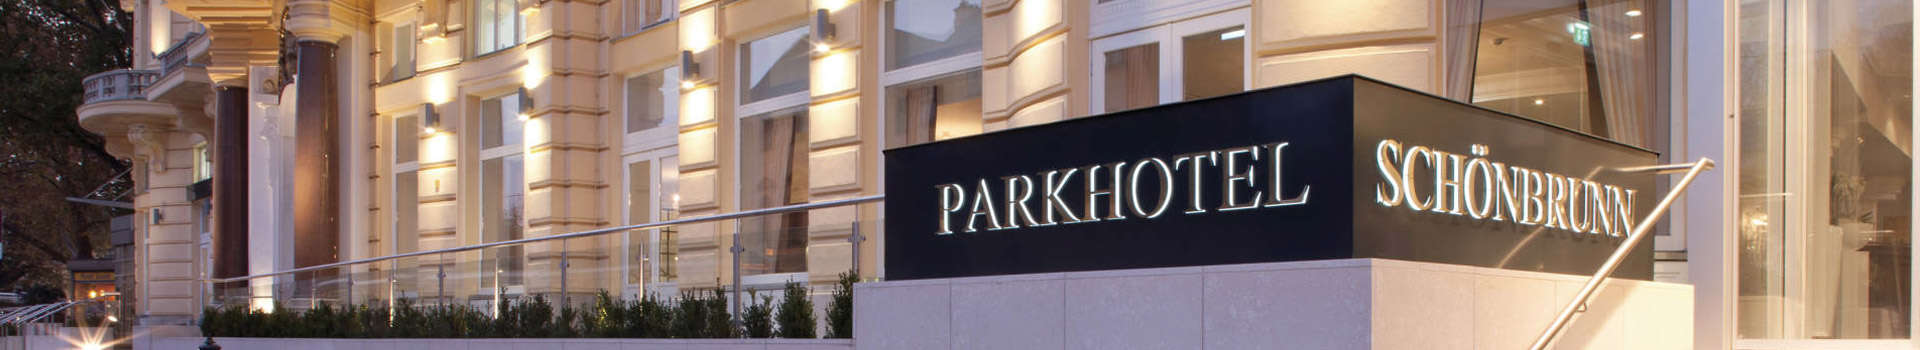 Parkhotel-Schonbrunn-Vienna